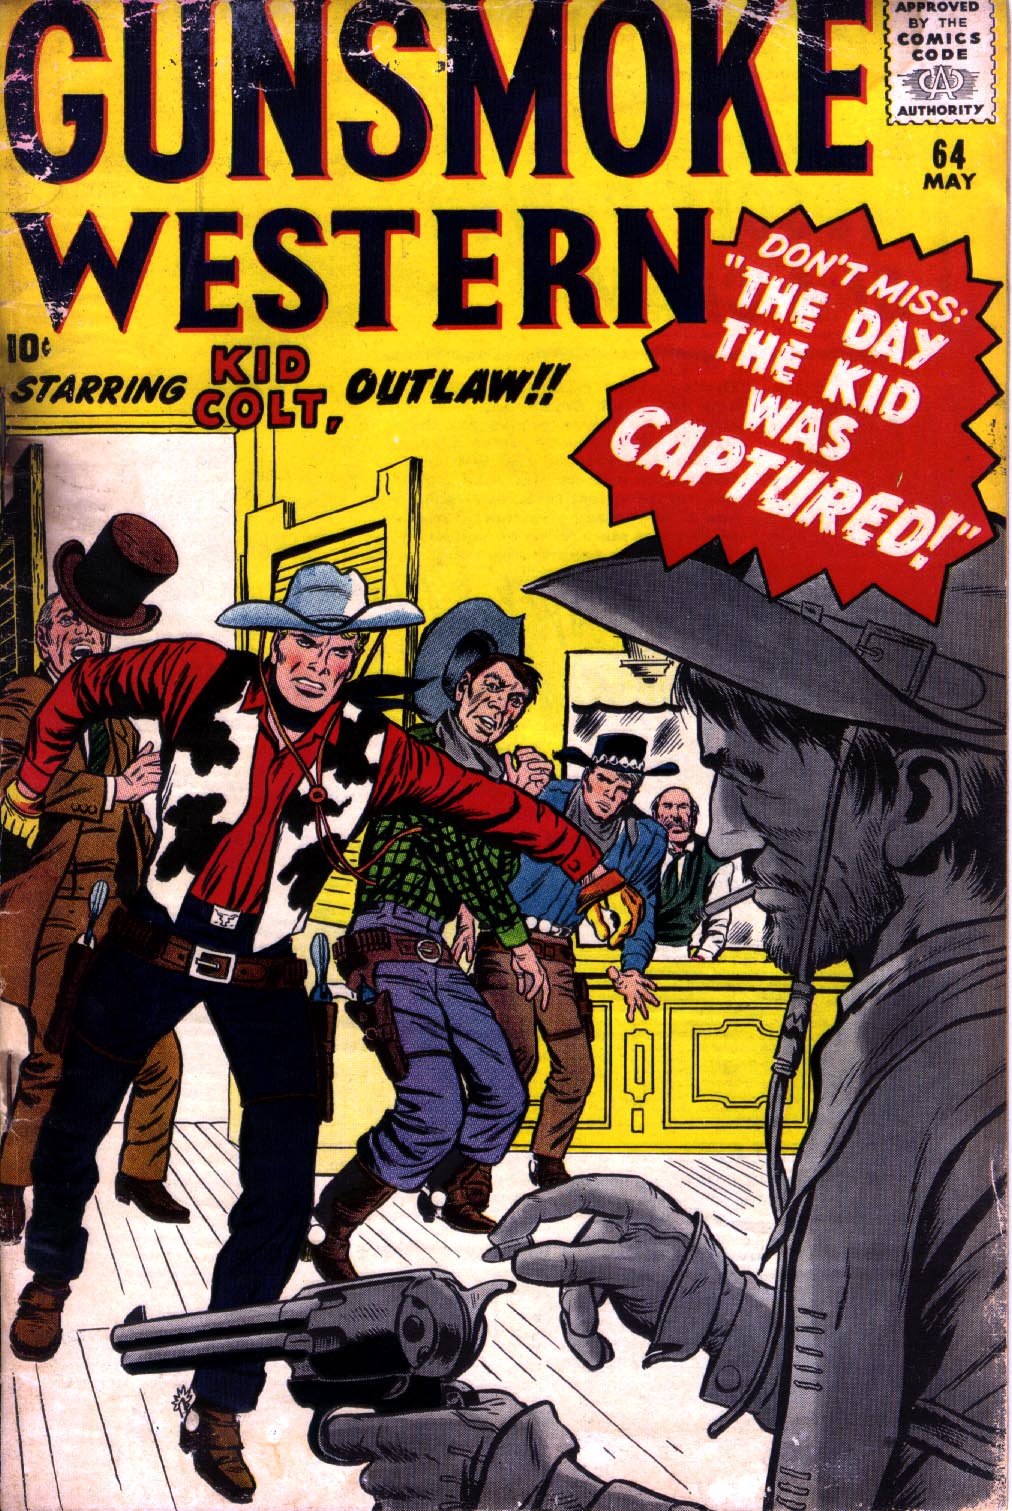 Read online Gunsmoke Western comic -  Issue #64 - 1